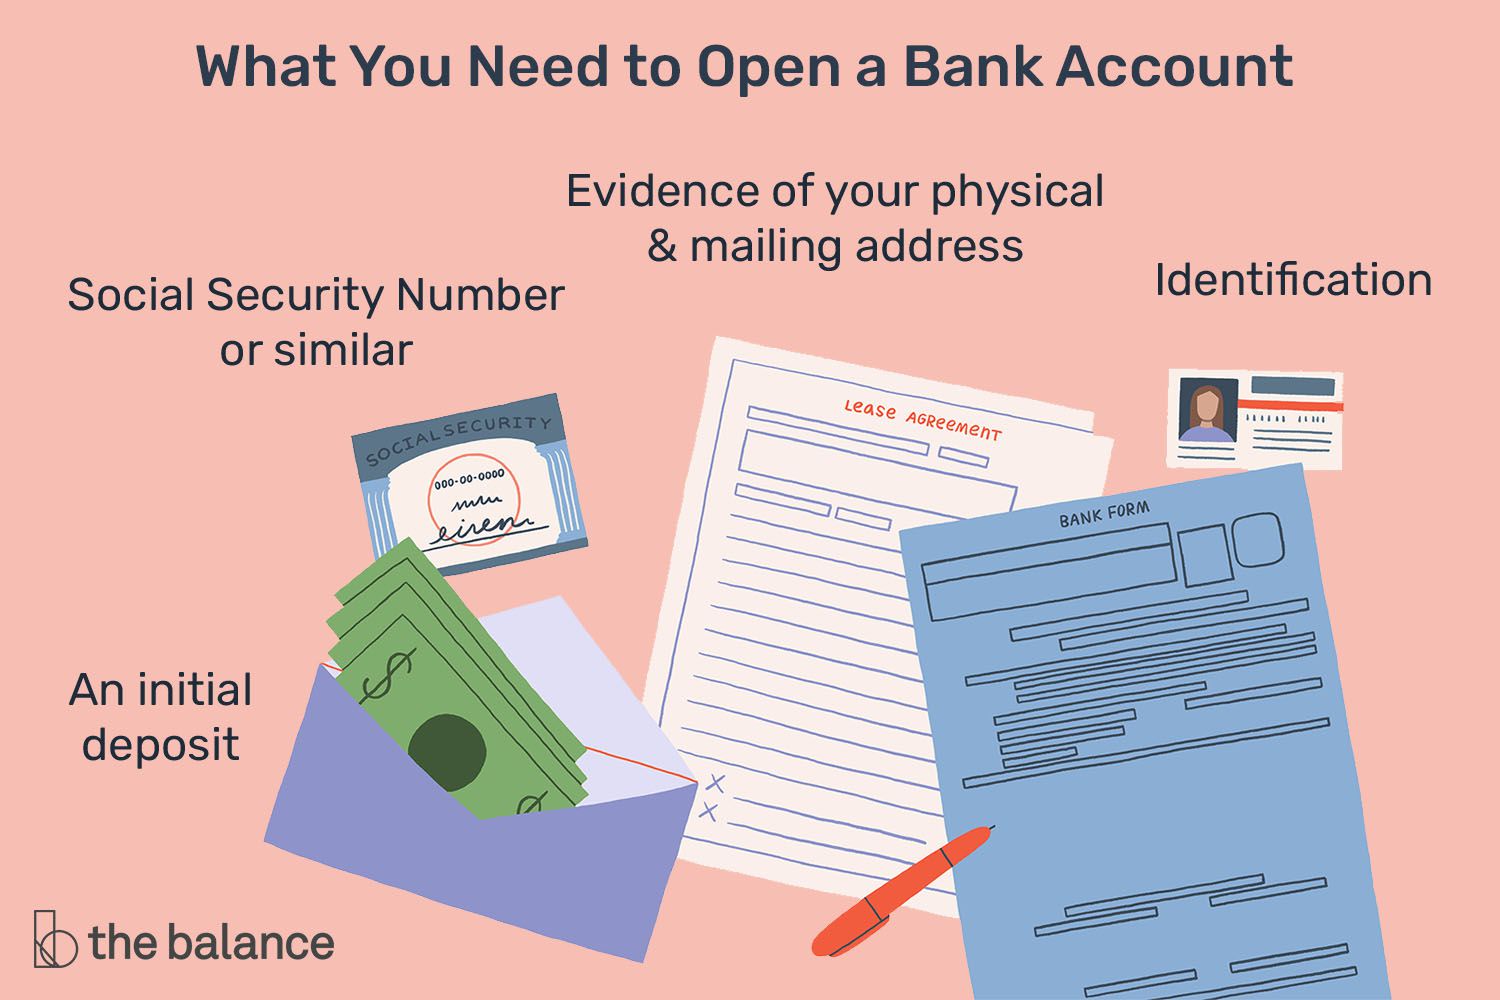 你需要开立一个银行账户的图像，包括社会保障卡，现金存款，填写的表格和身份证。＂class=